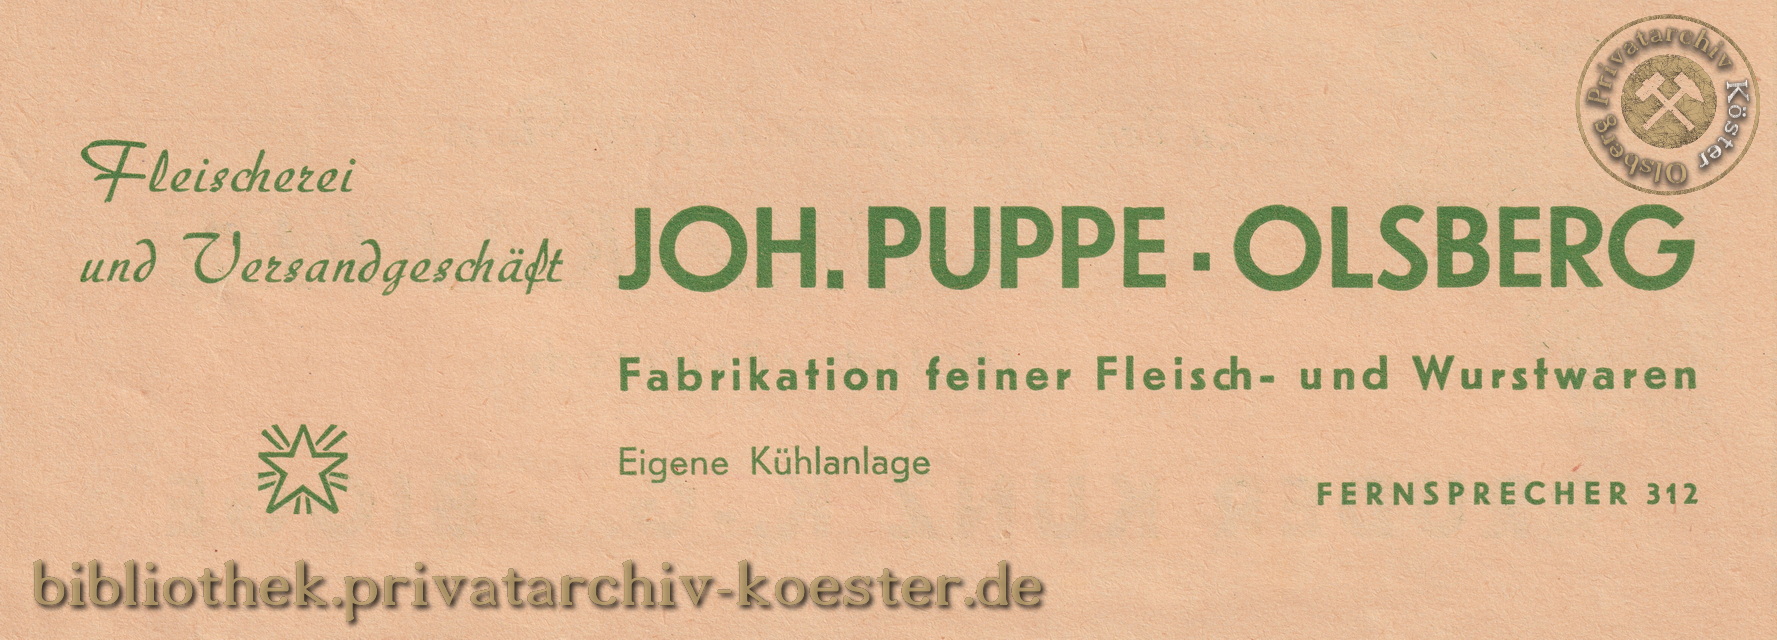 Werbeanzeige Fleischerei Puppe Olsberg 1956